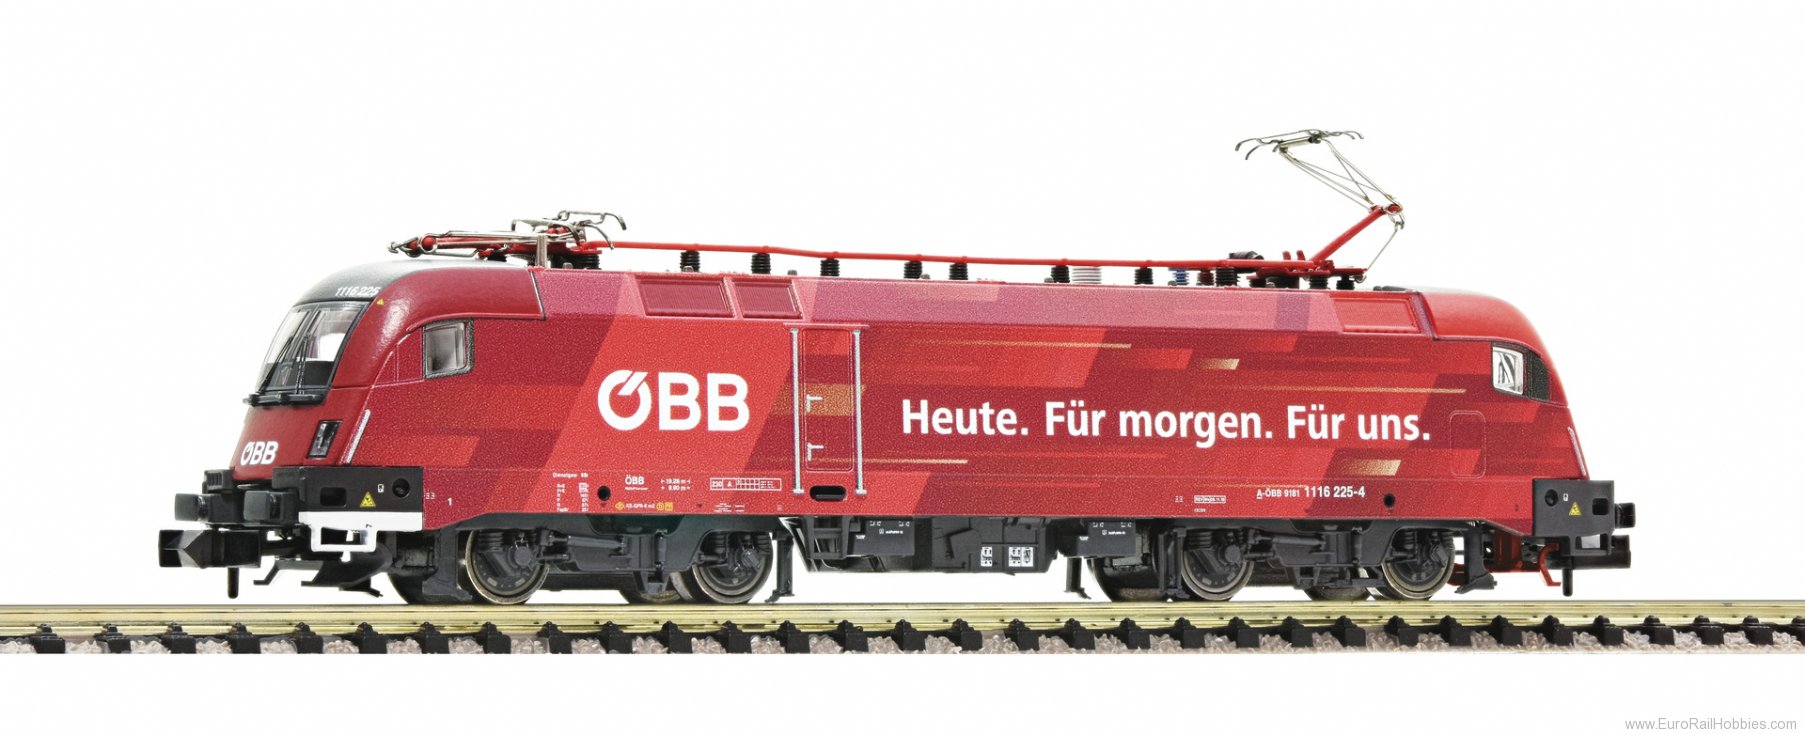 Fleischmann 781703 ÃBB Electric locomotive 1116 225-4 